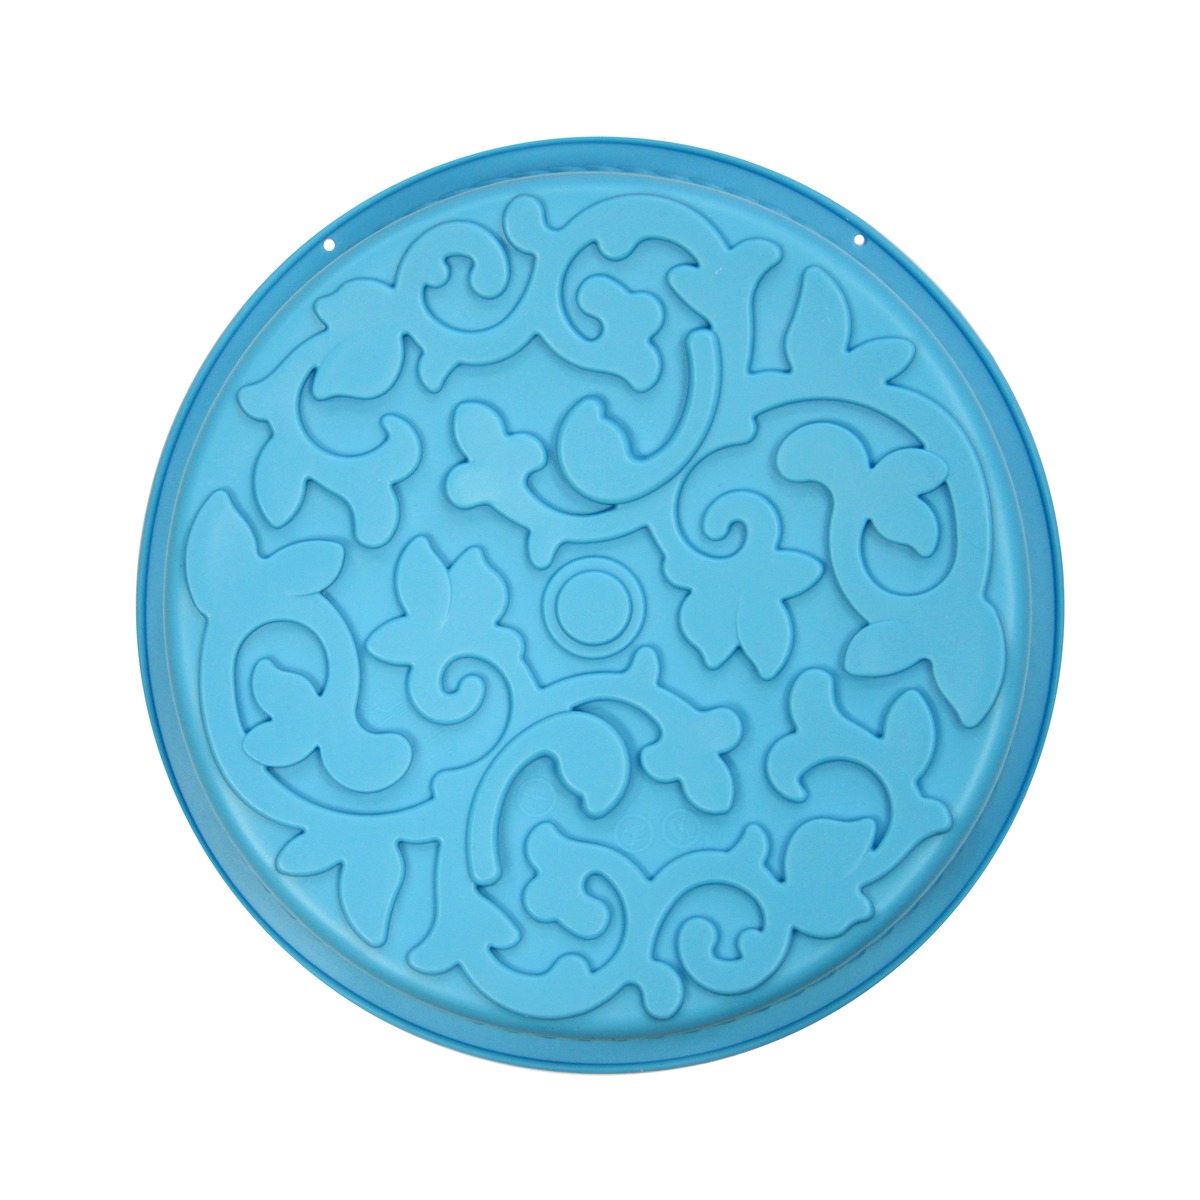 Moule à gâteau motif arabesque - Antiadhésif - Diamètre 27 cm - Bleu